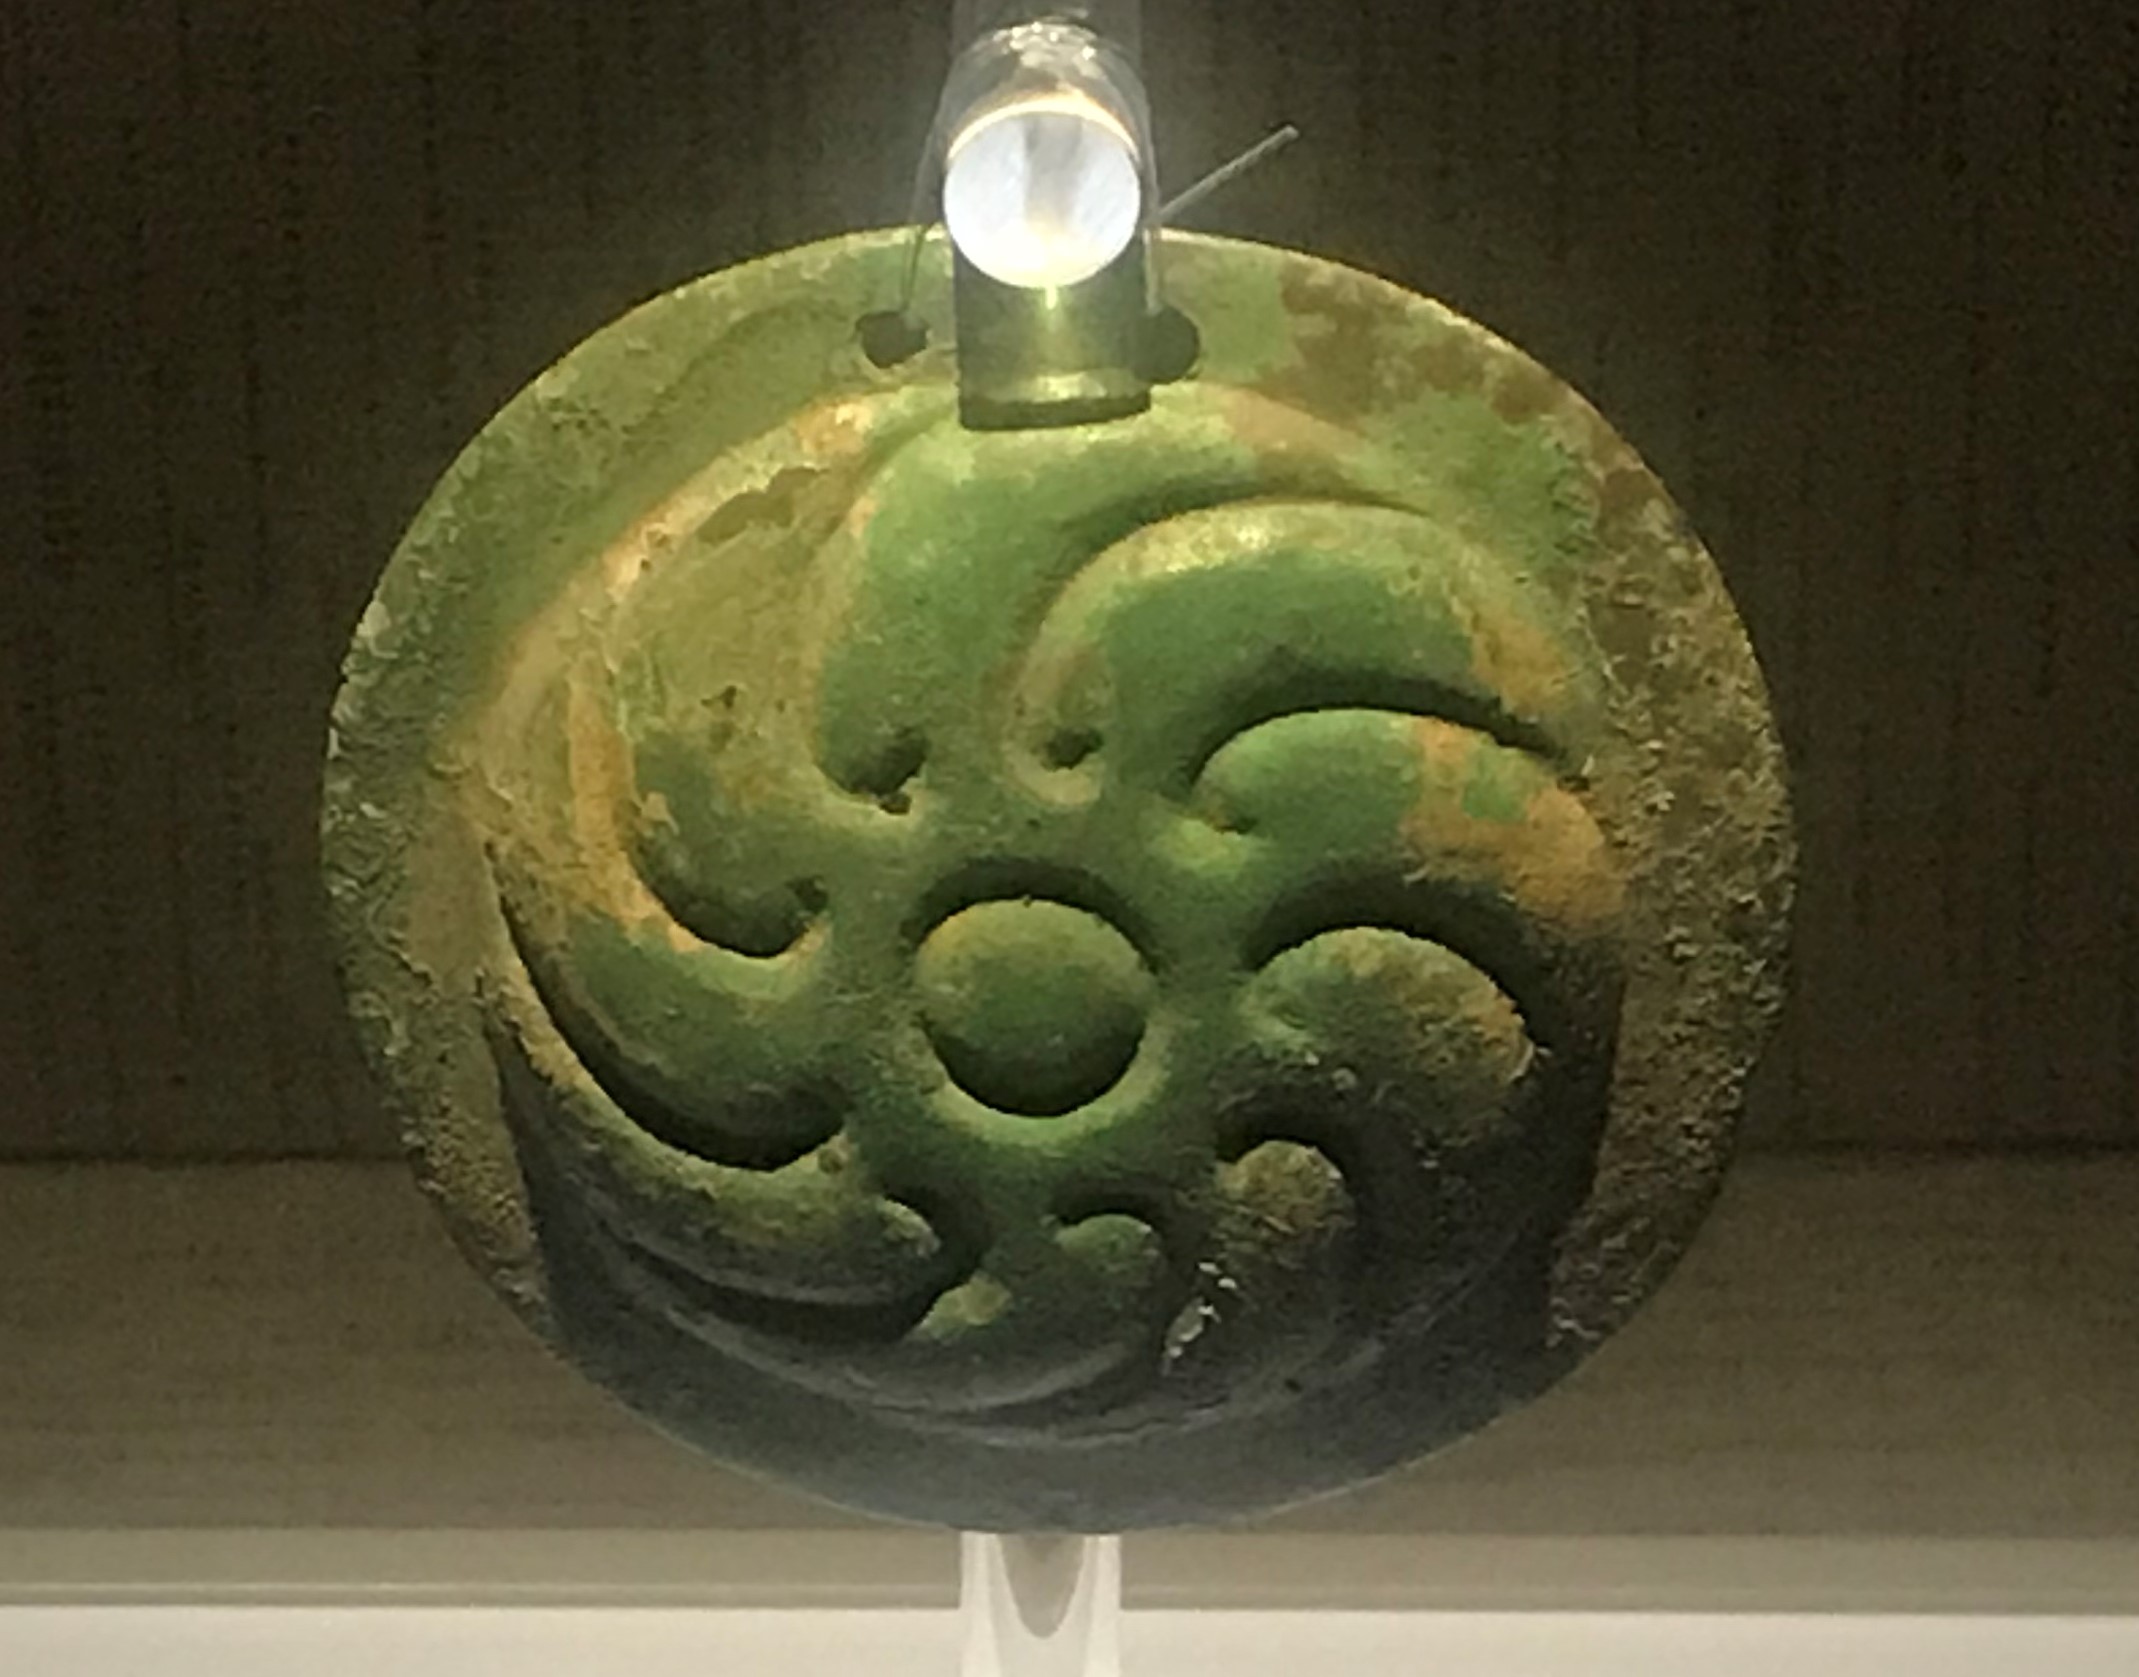  青銅円形掛け飾り-青銅器館-三星堆博物館-広漢市-徳陽市-四川省